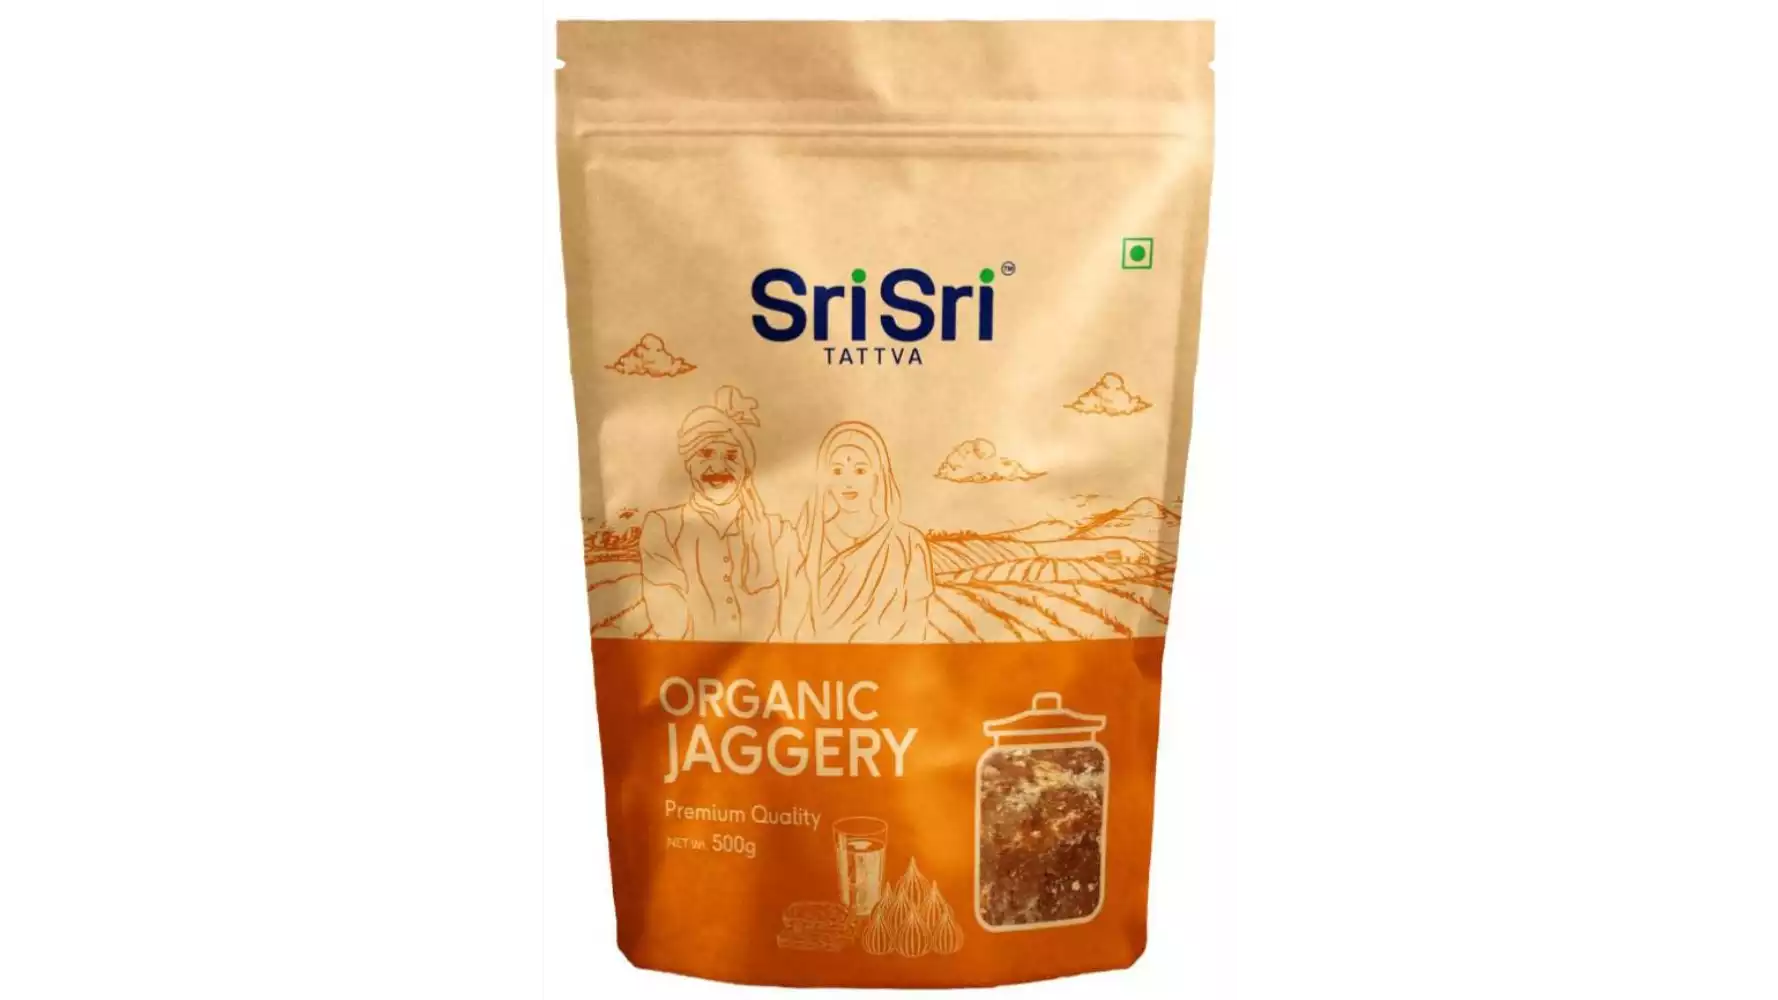 Sri Sri Tattva Organic Jaggery (500g)